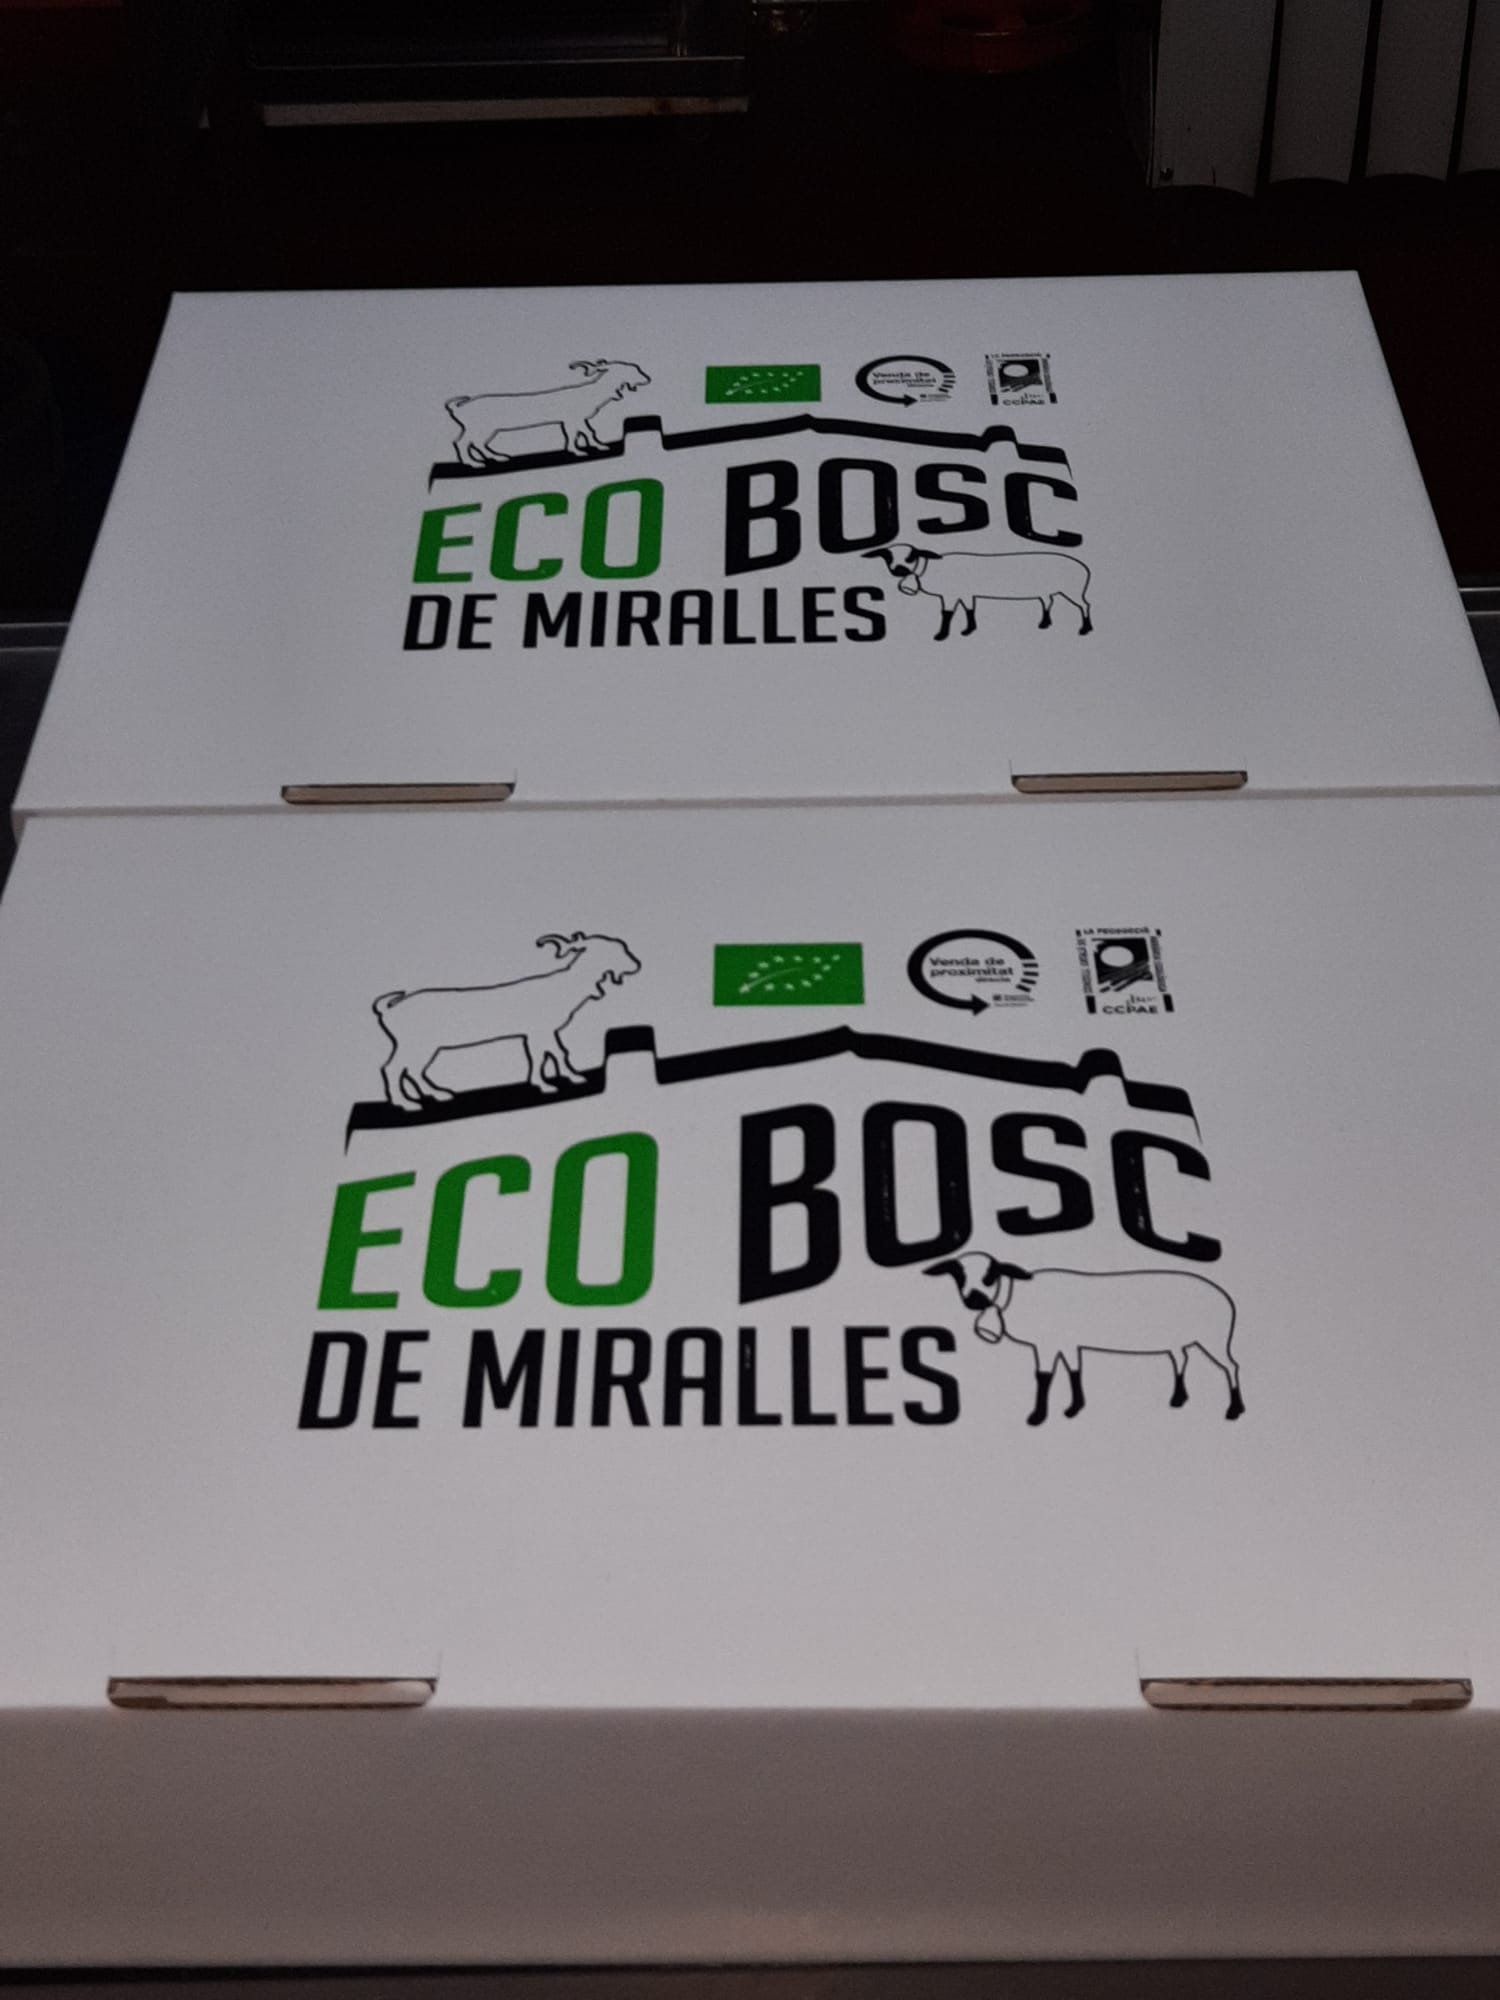 1/2 cabrit eco ecobosch miralles minim 2kg